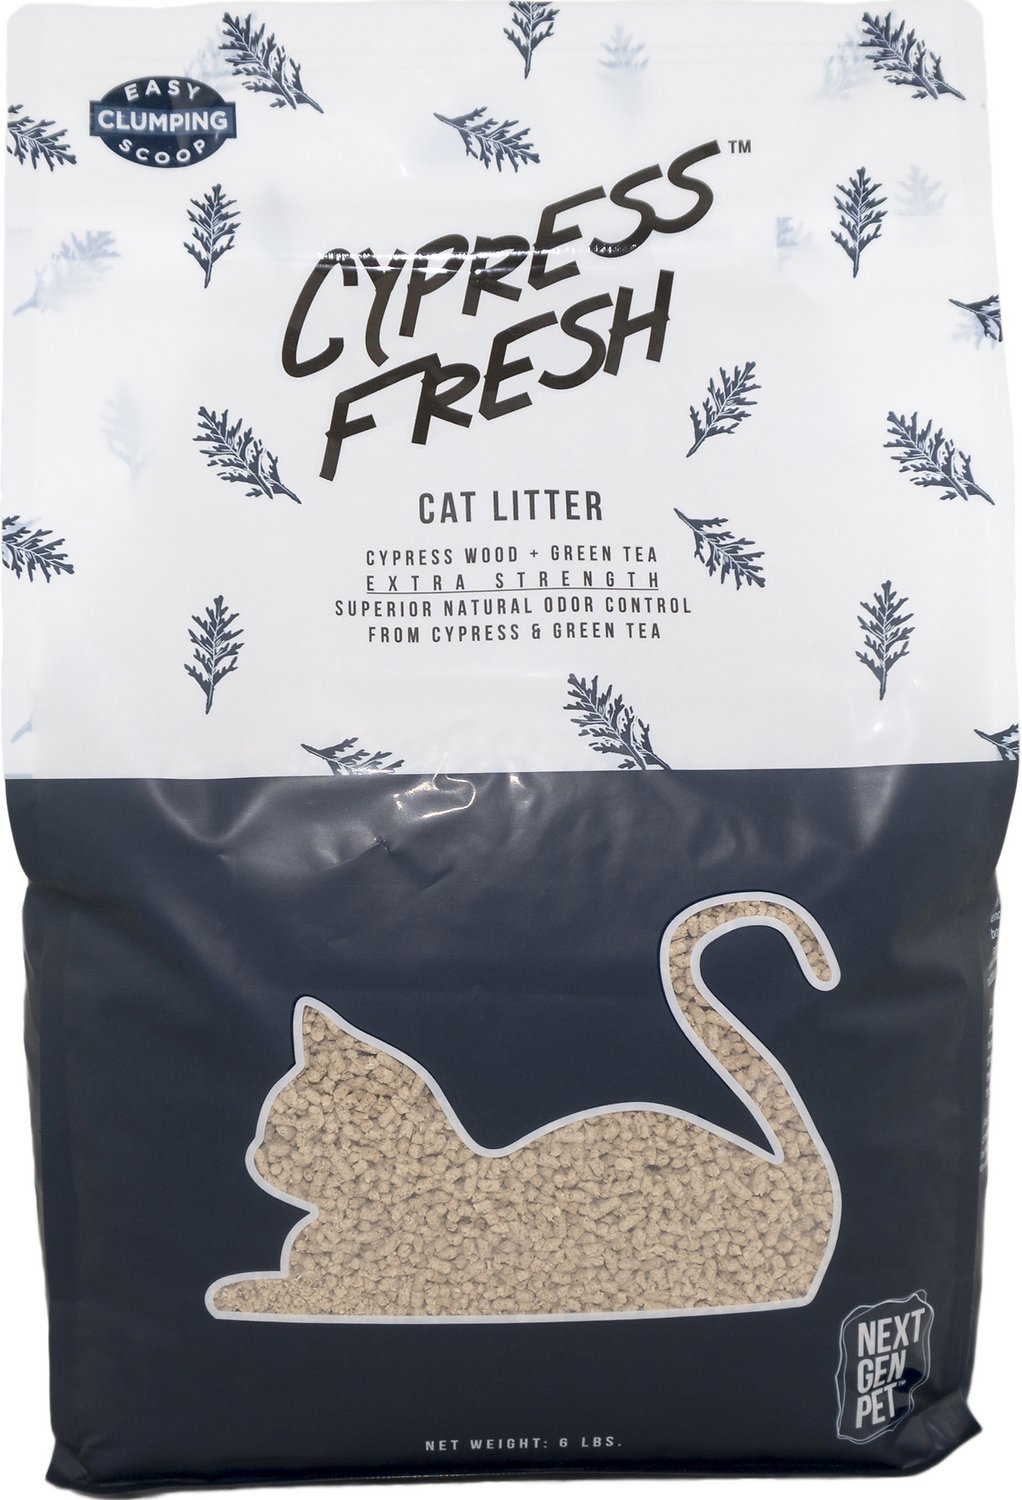 Next Gen Cypress Fresh Cat Litter #6 - Click Image to Close